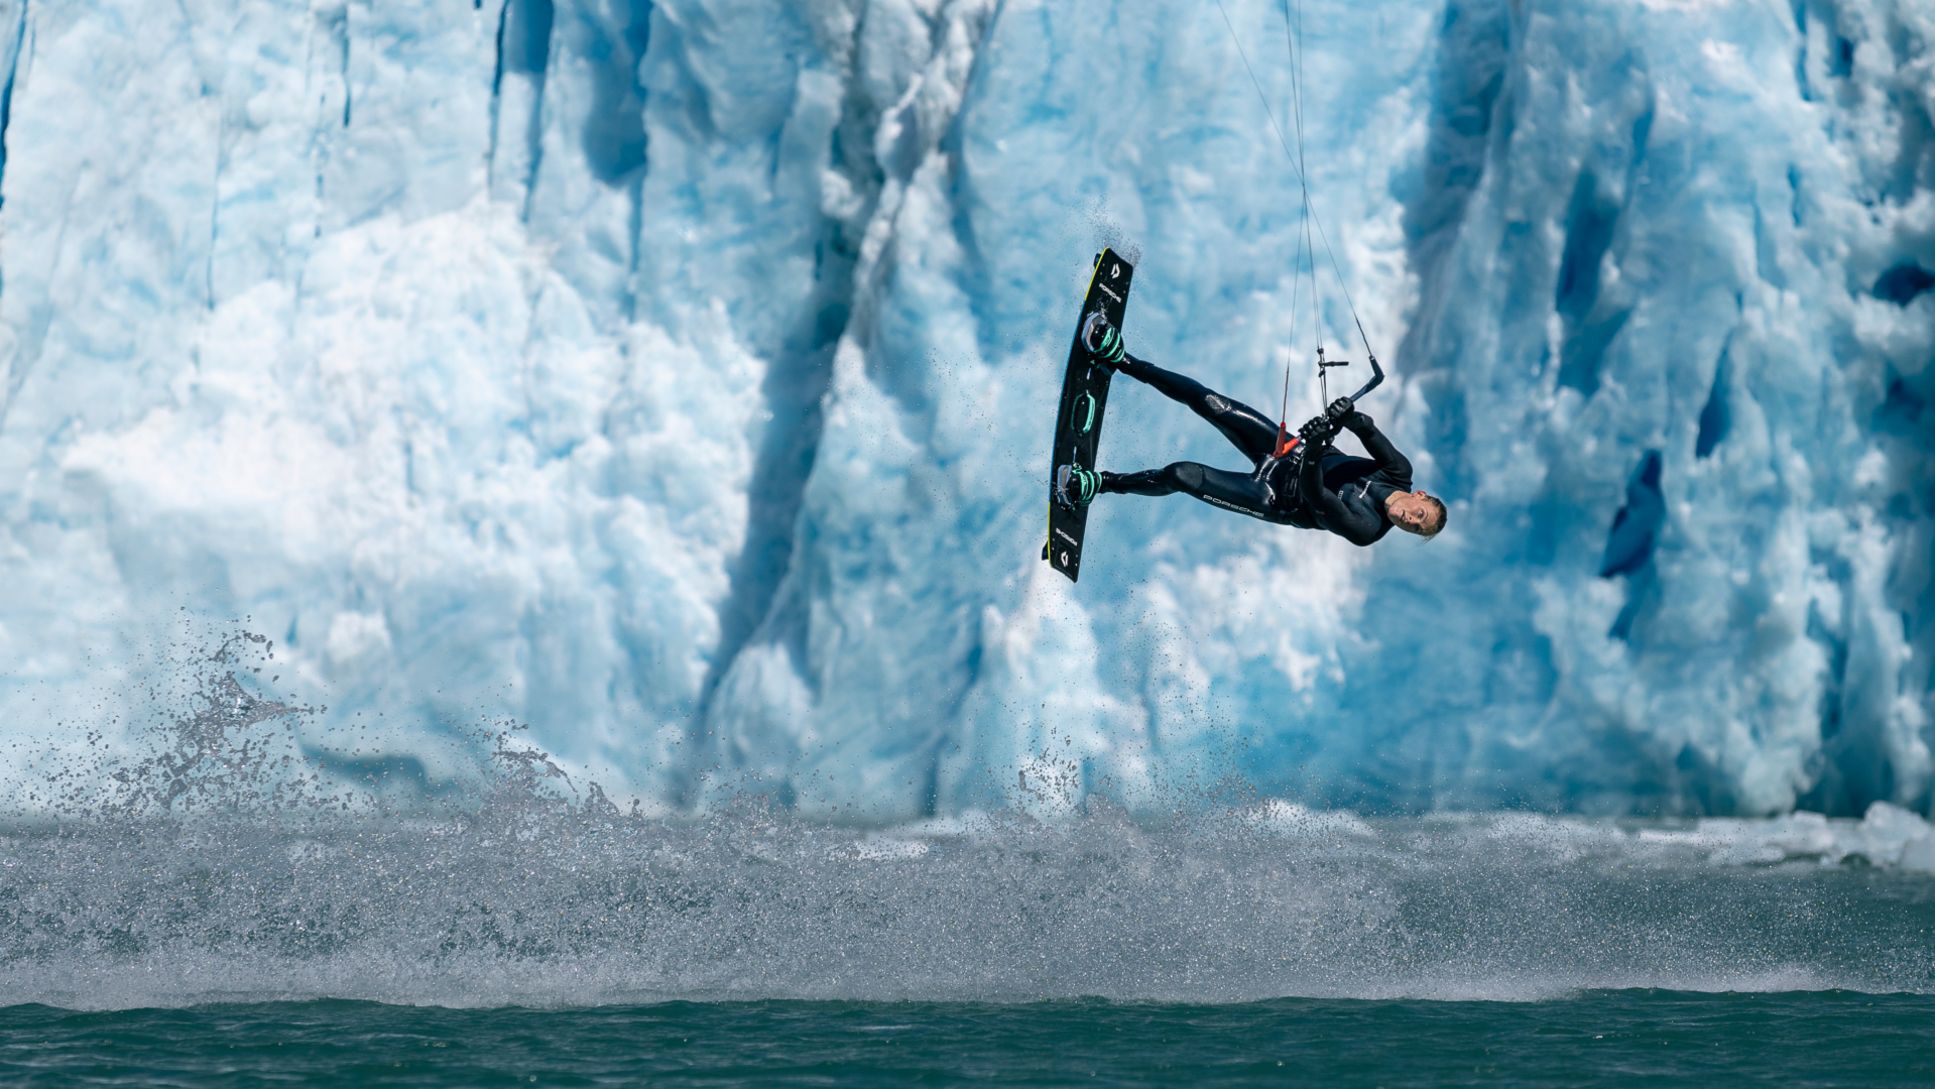 Action scenes: kitesurfers on an adventure tour in Alaska